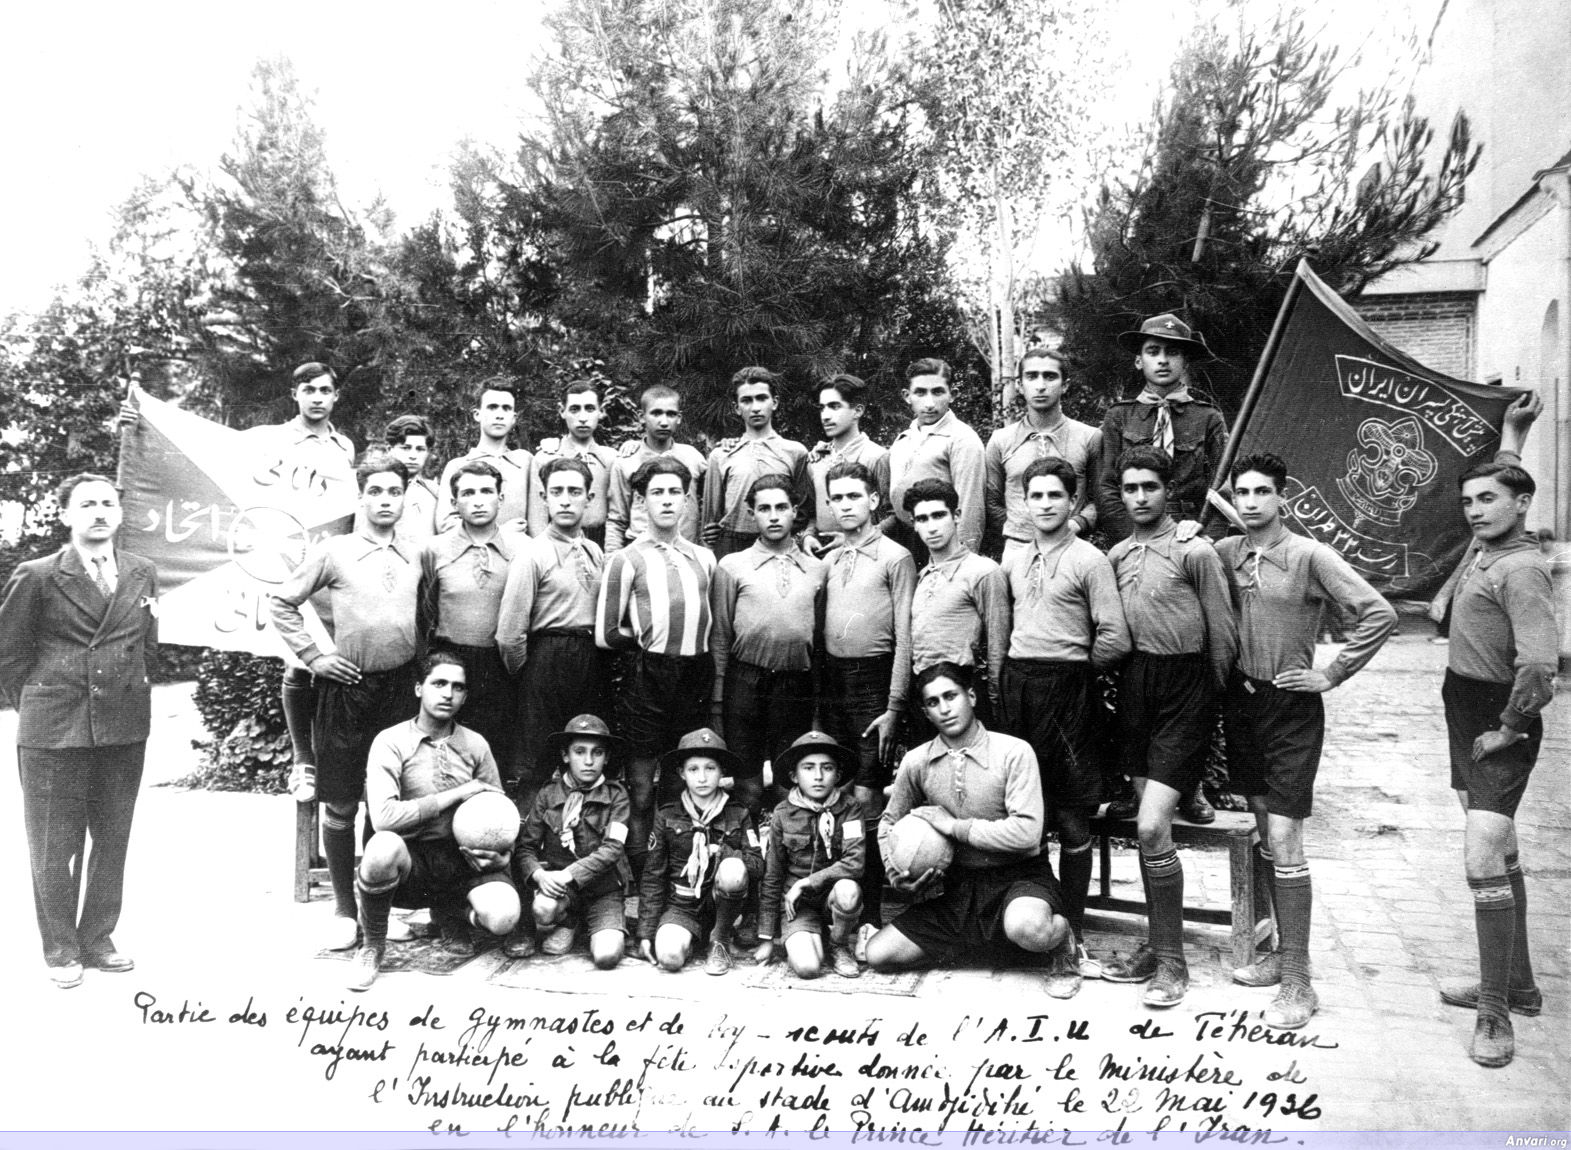 Boyscouts Soccer Team 1936 - Boyscouts Soccer Team 1936 